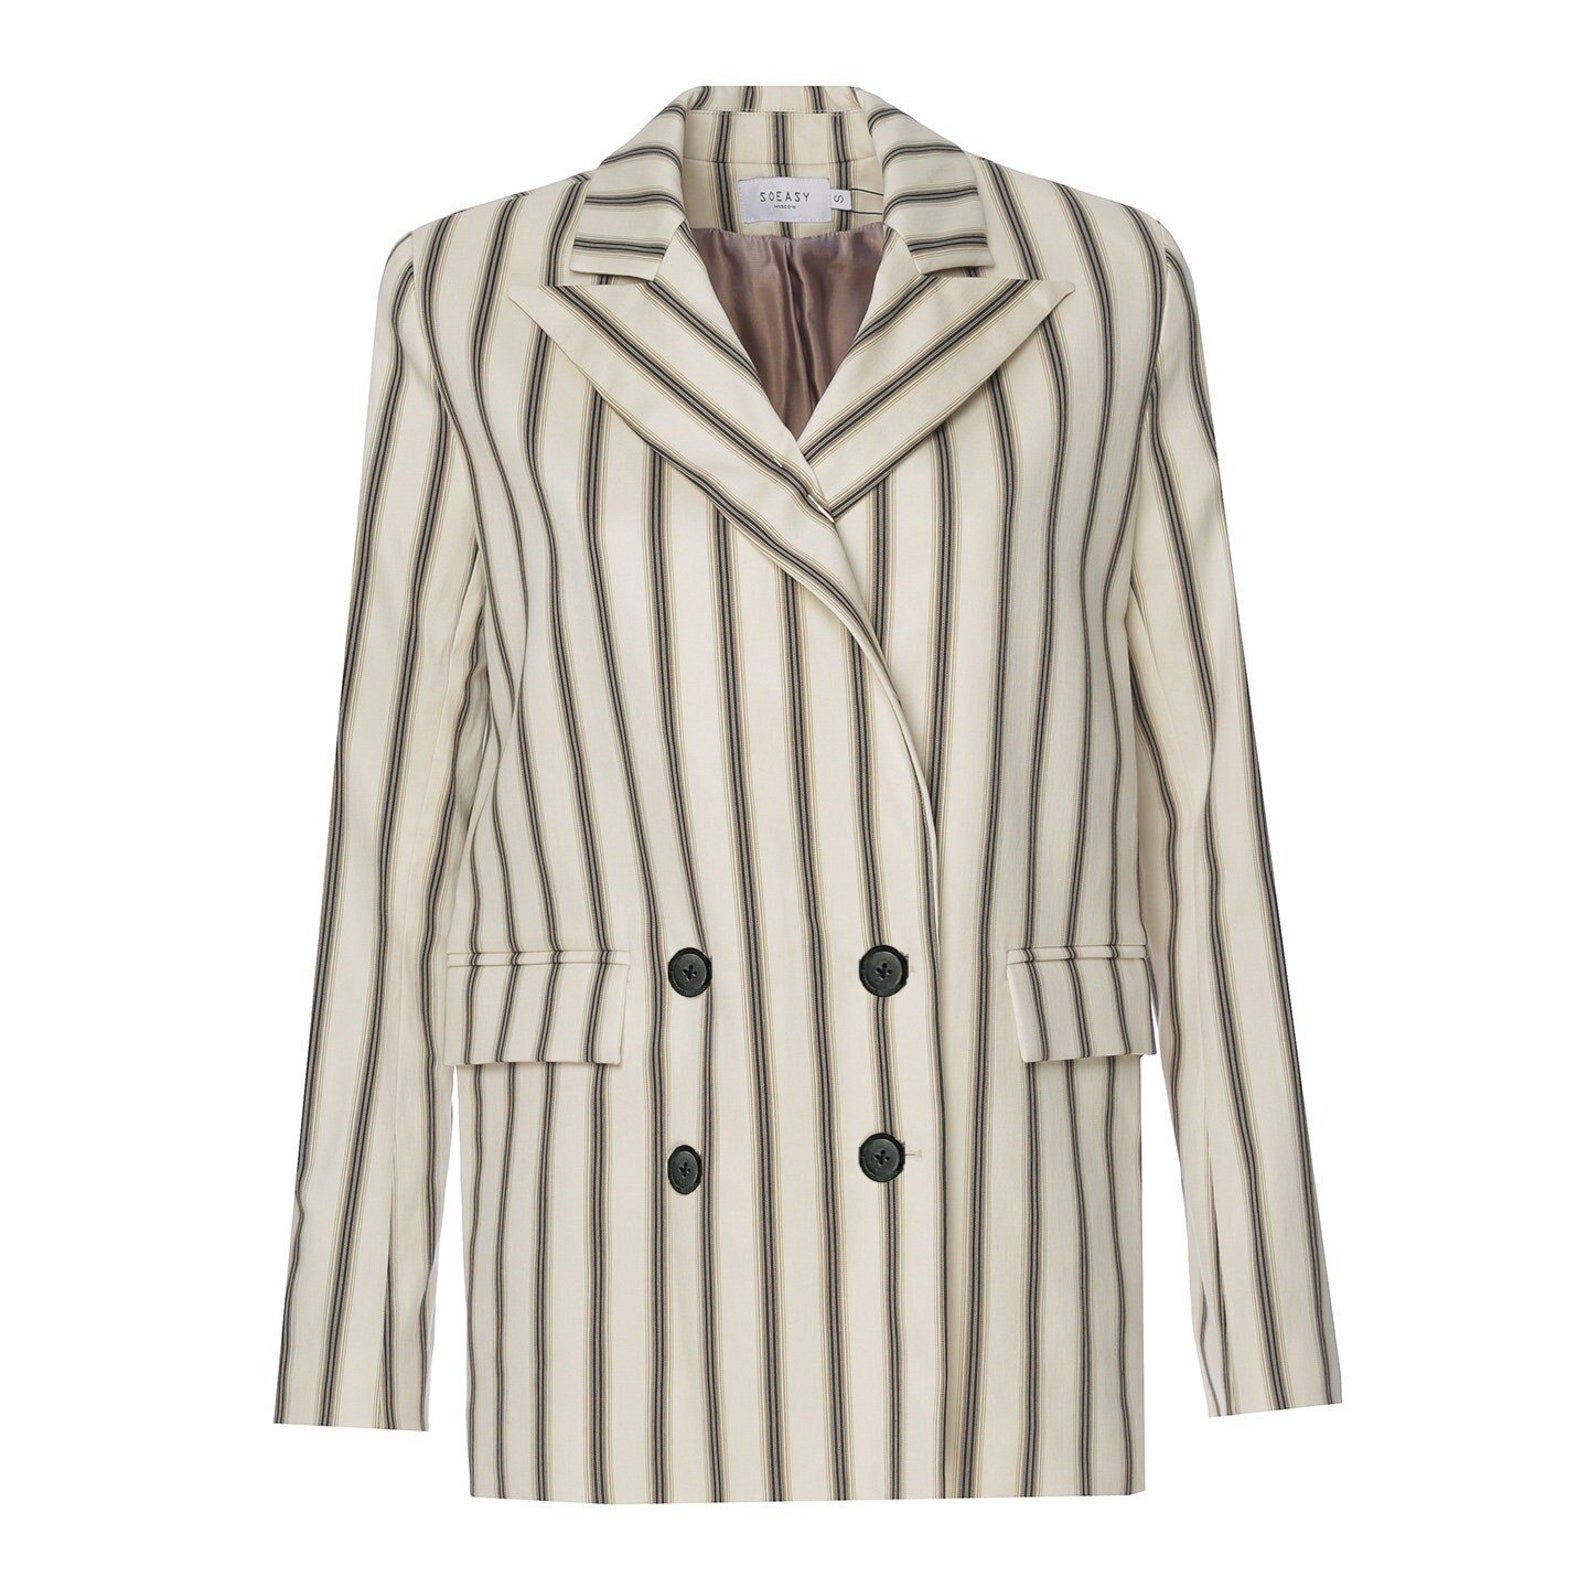 DOUBLE-BREASTED BLAZER Striped beige jacket Women Peak lapel | Etsy